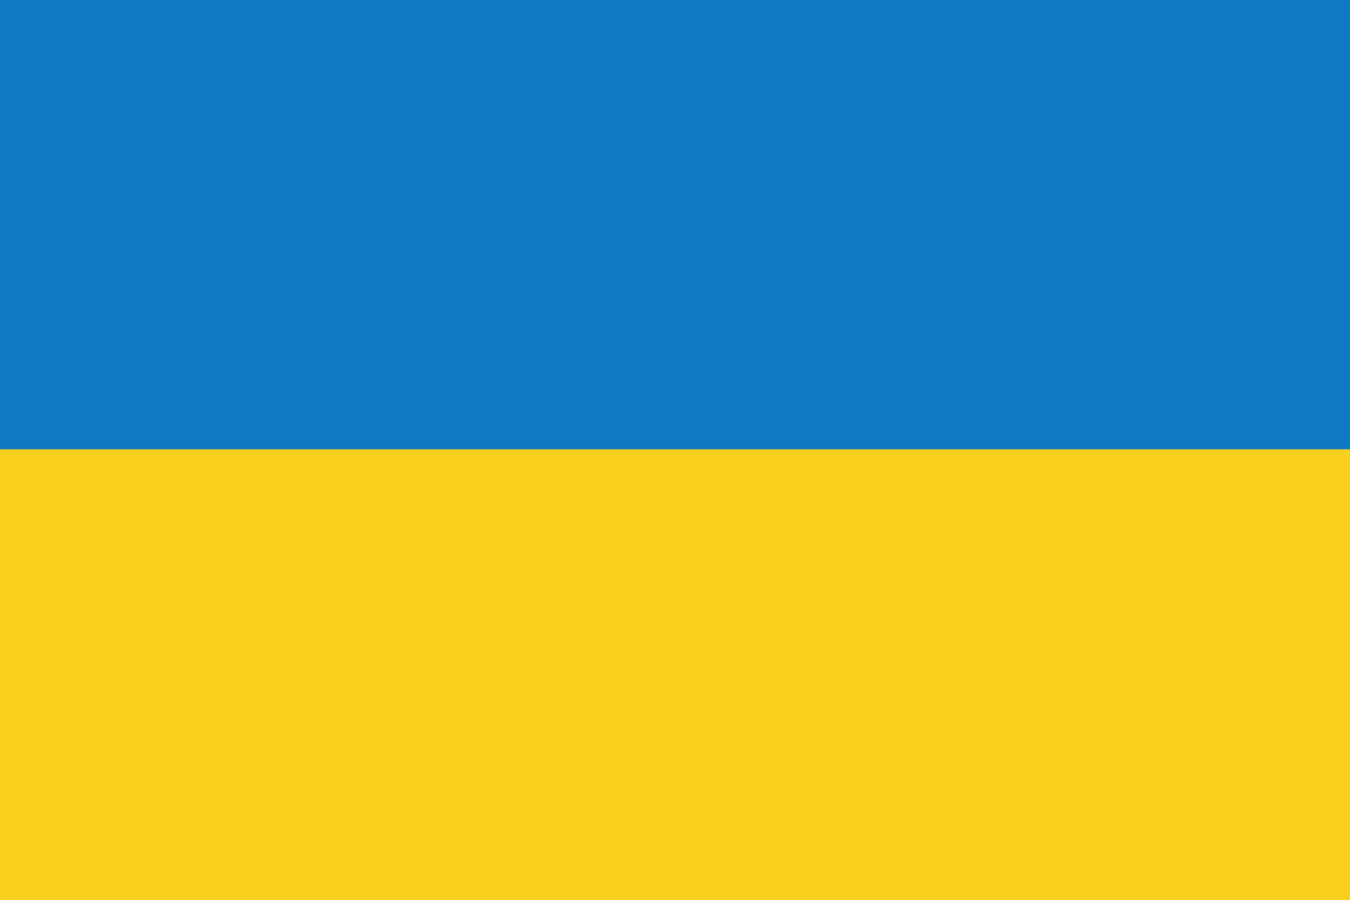 Flagge, Ukraine, Demokratische Republik, Demokratie, Europa, gelb, Blau, Farben, Design, Symbol